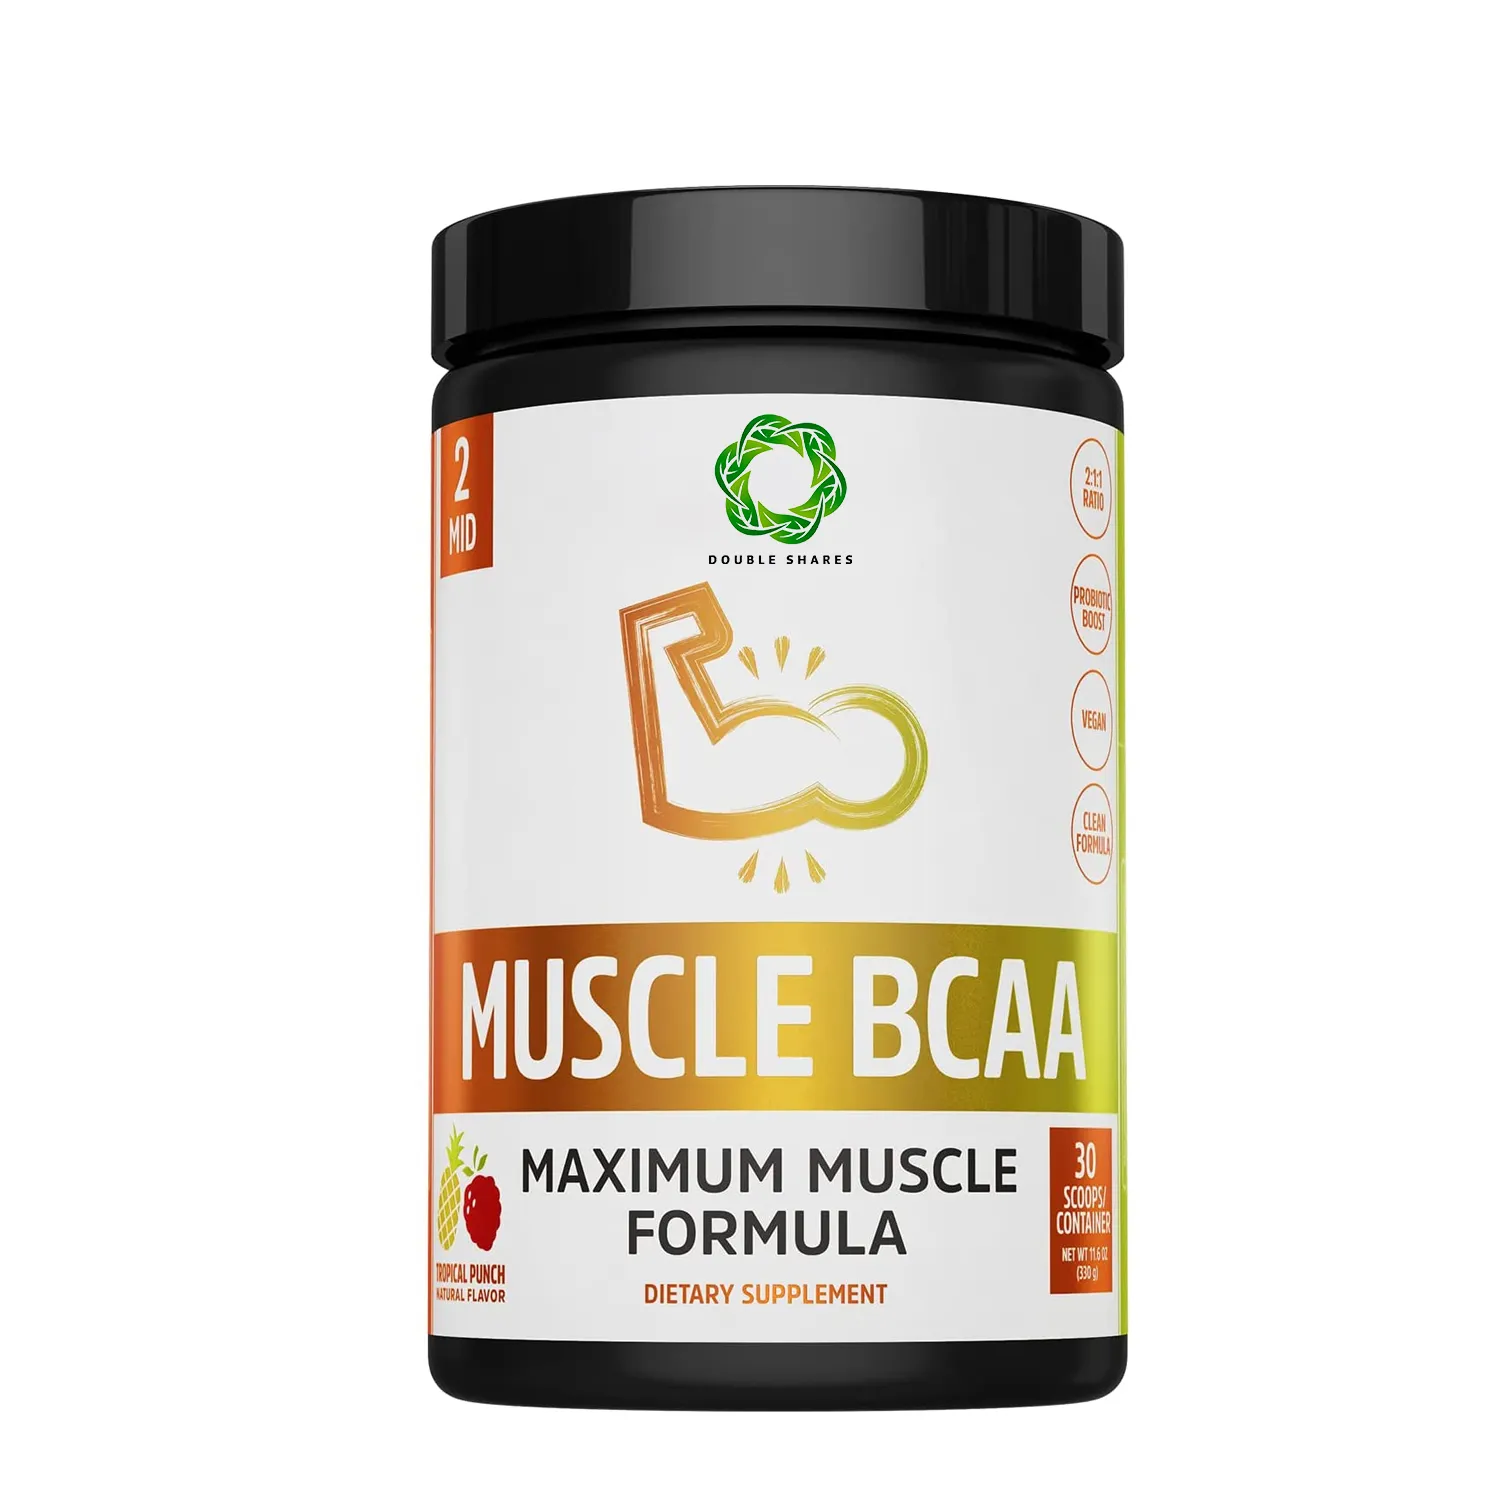 근육 Bcaa 최대 근육 공식 분말. 사슬 아미노산 유청 단백질 펩타이드 크레아틴 분말 증가 근육 무게 증가